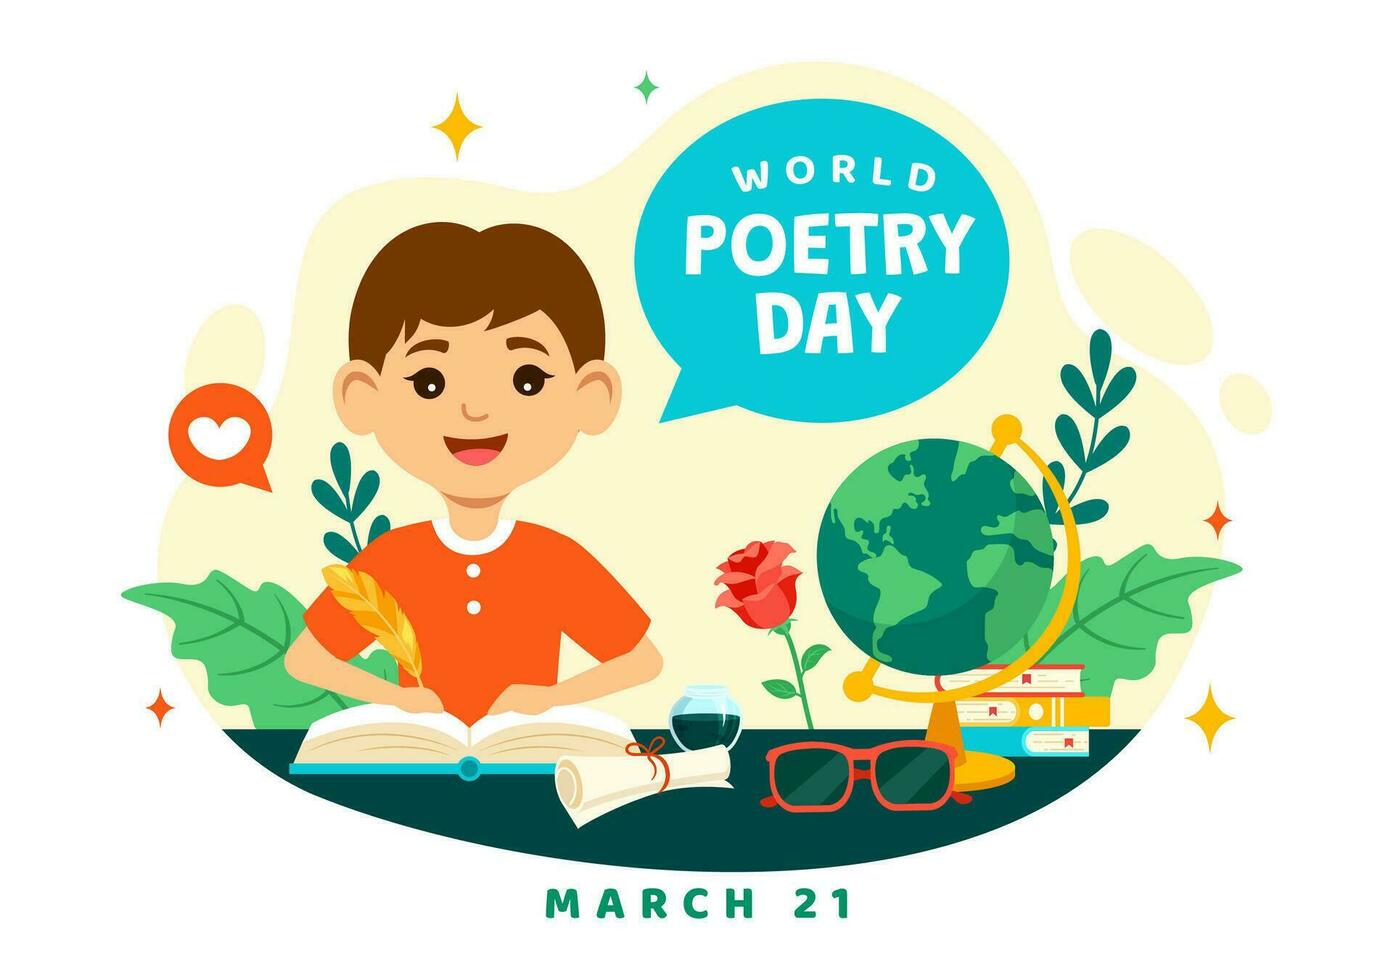 mundo poesía día vector ilustración en marzo 21 con un pluma, tinta, papel, máquina de escribir y libro a escritura en literatura plano dibujos animados antecedentes